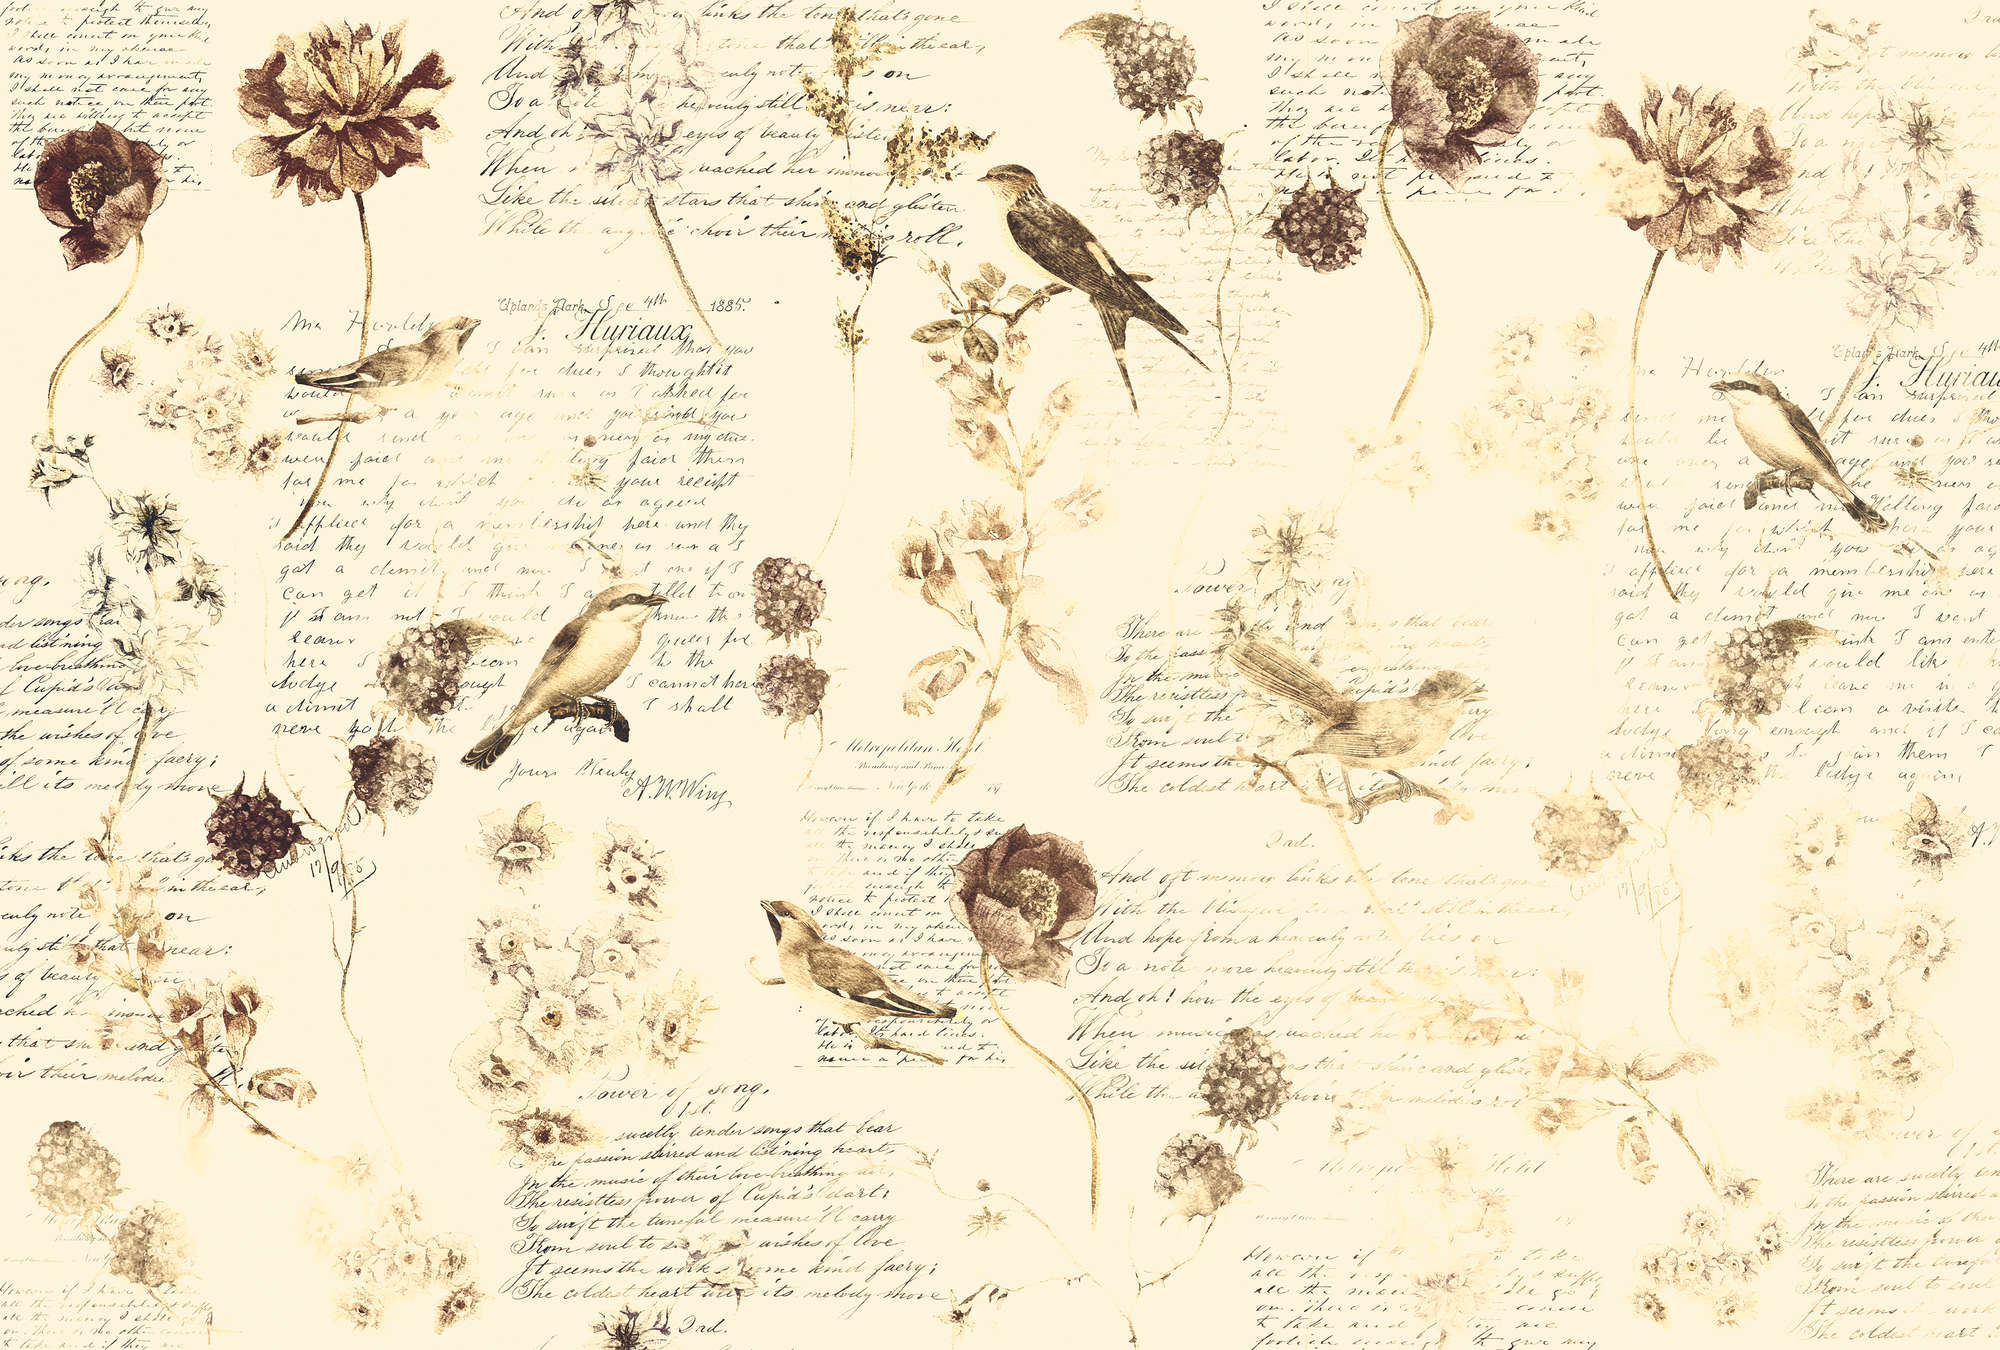             Fototapete romantische mit Blüten & Handschrift-Dekor – Creme, Braun, Beige
        